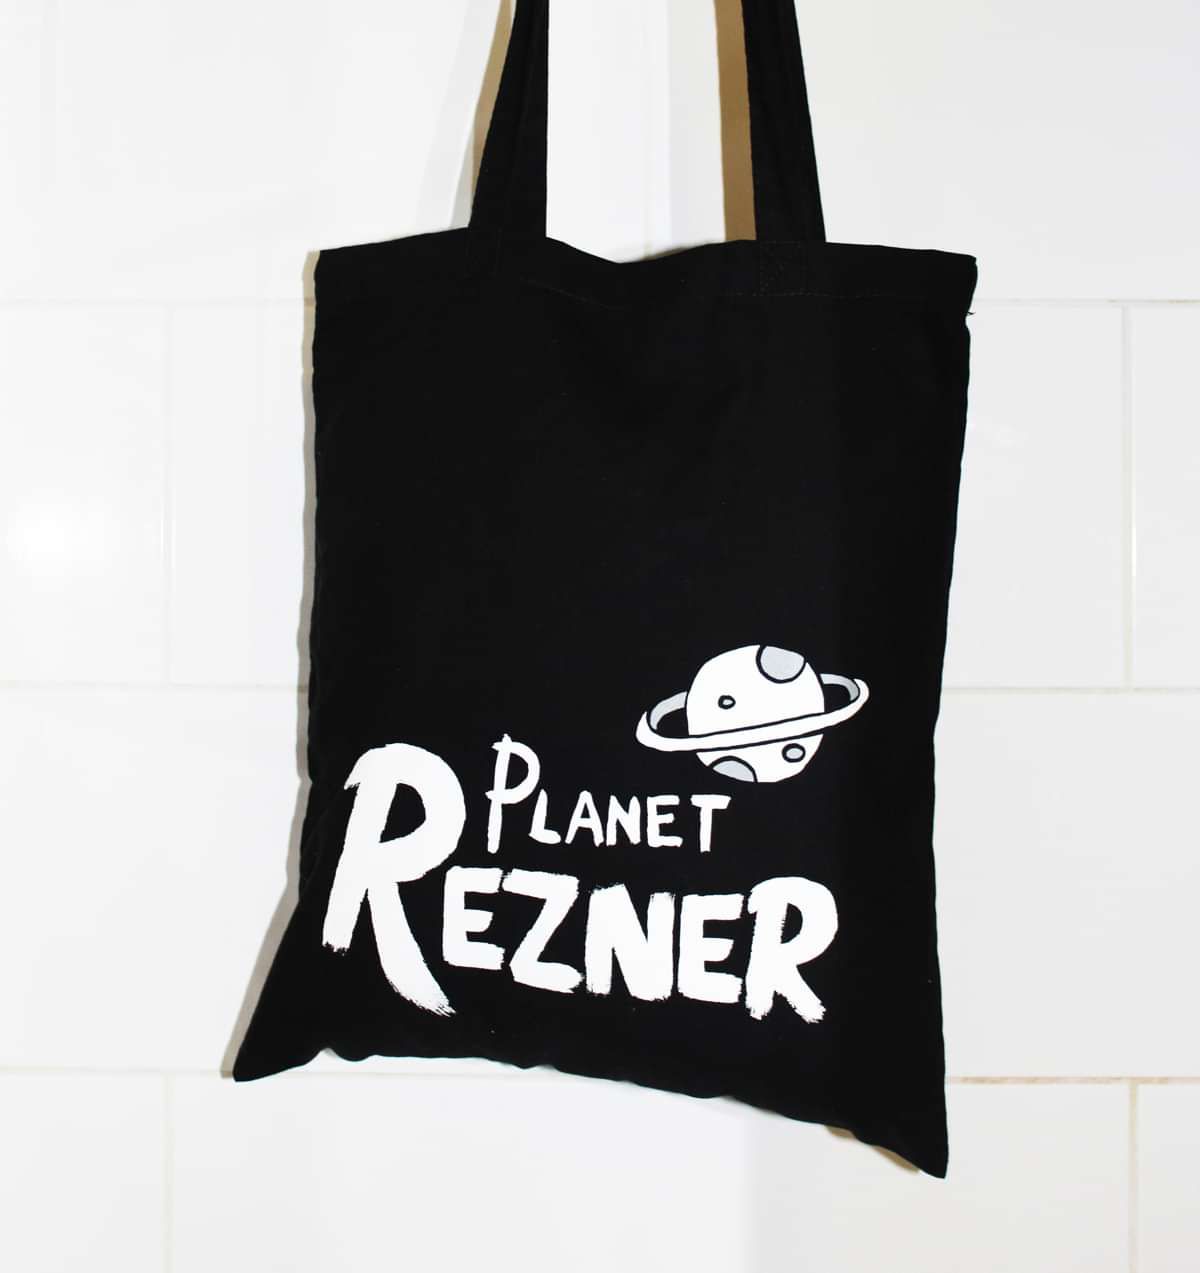 PLANET REZNER TOTE BAG - The Rezner